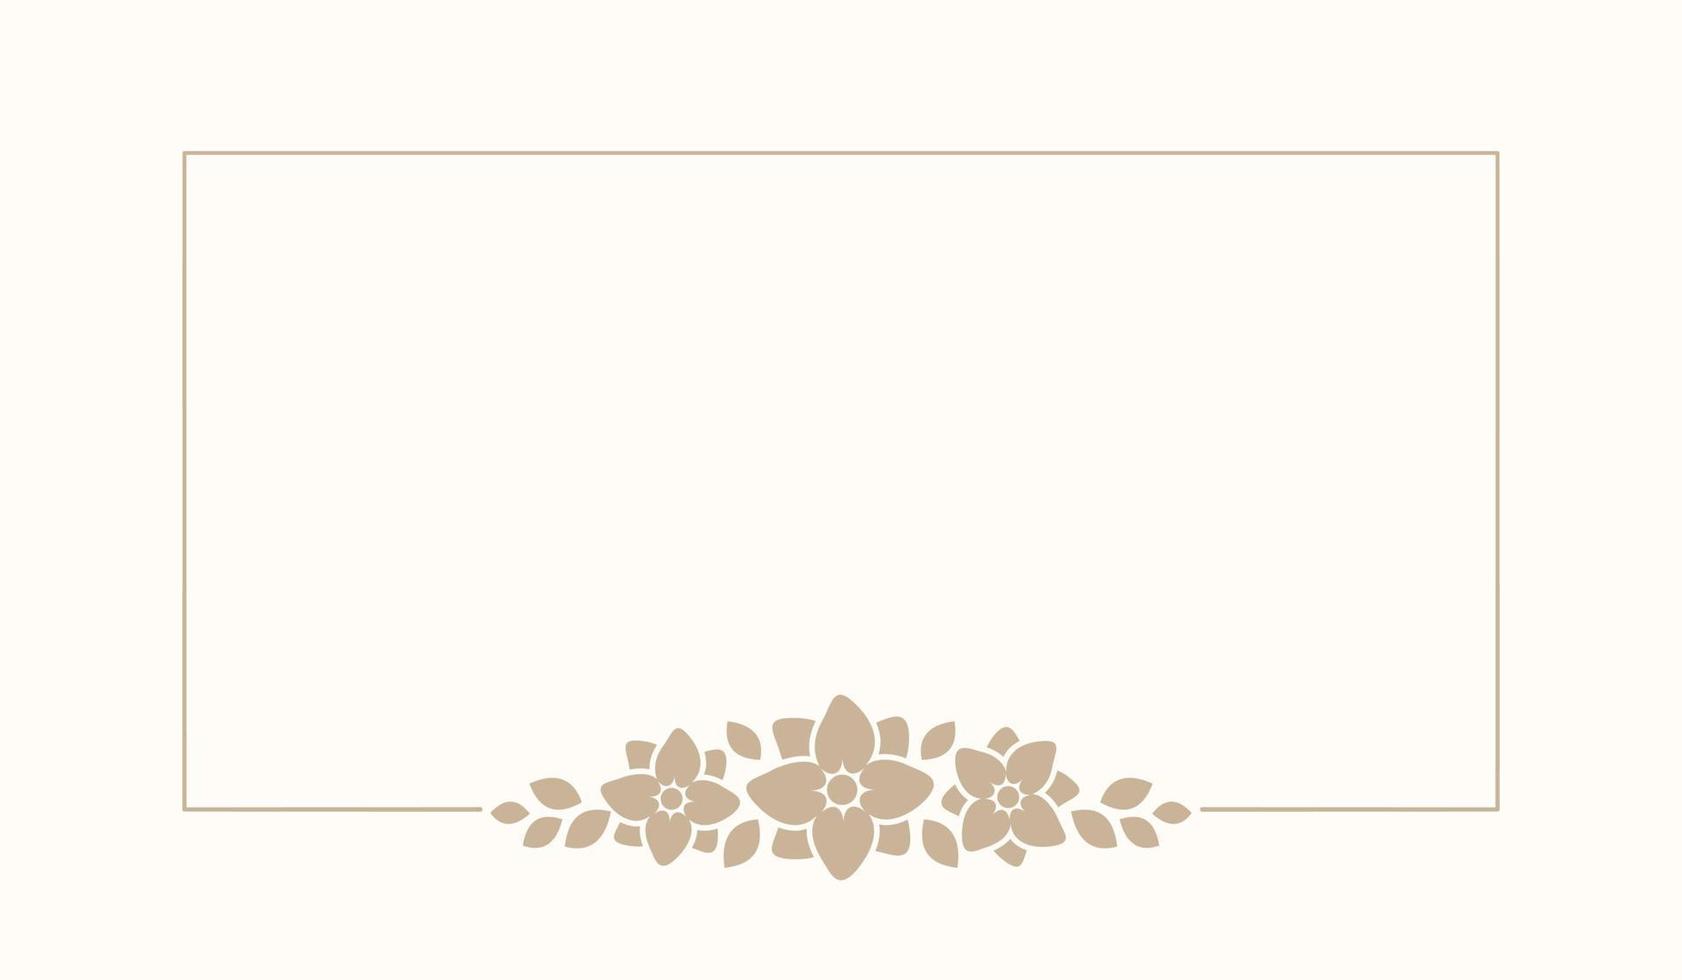 Floral beige rectangle frame. Botanical boho border vector illustration. Simple elegant romantic style for wedding events, card design, logo, labels, social media posts, templates